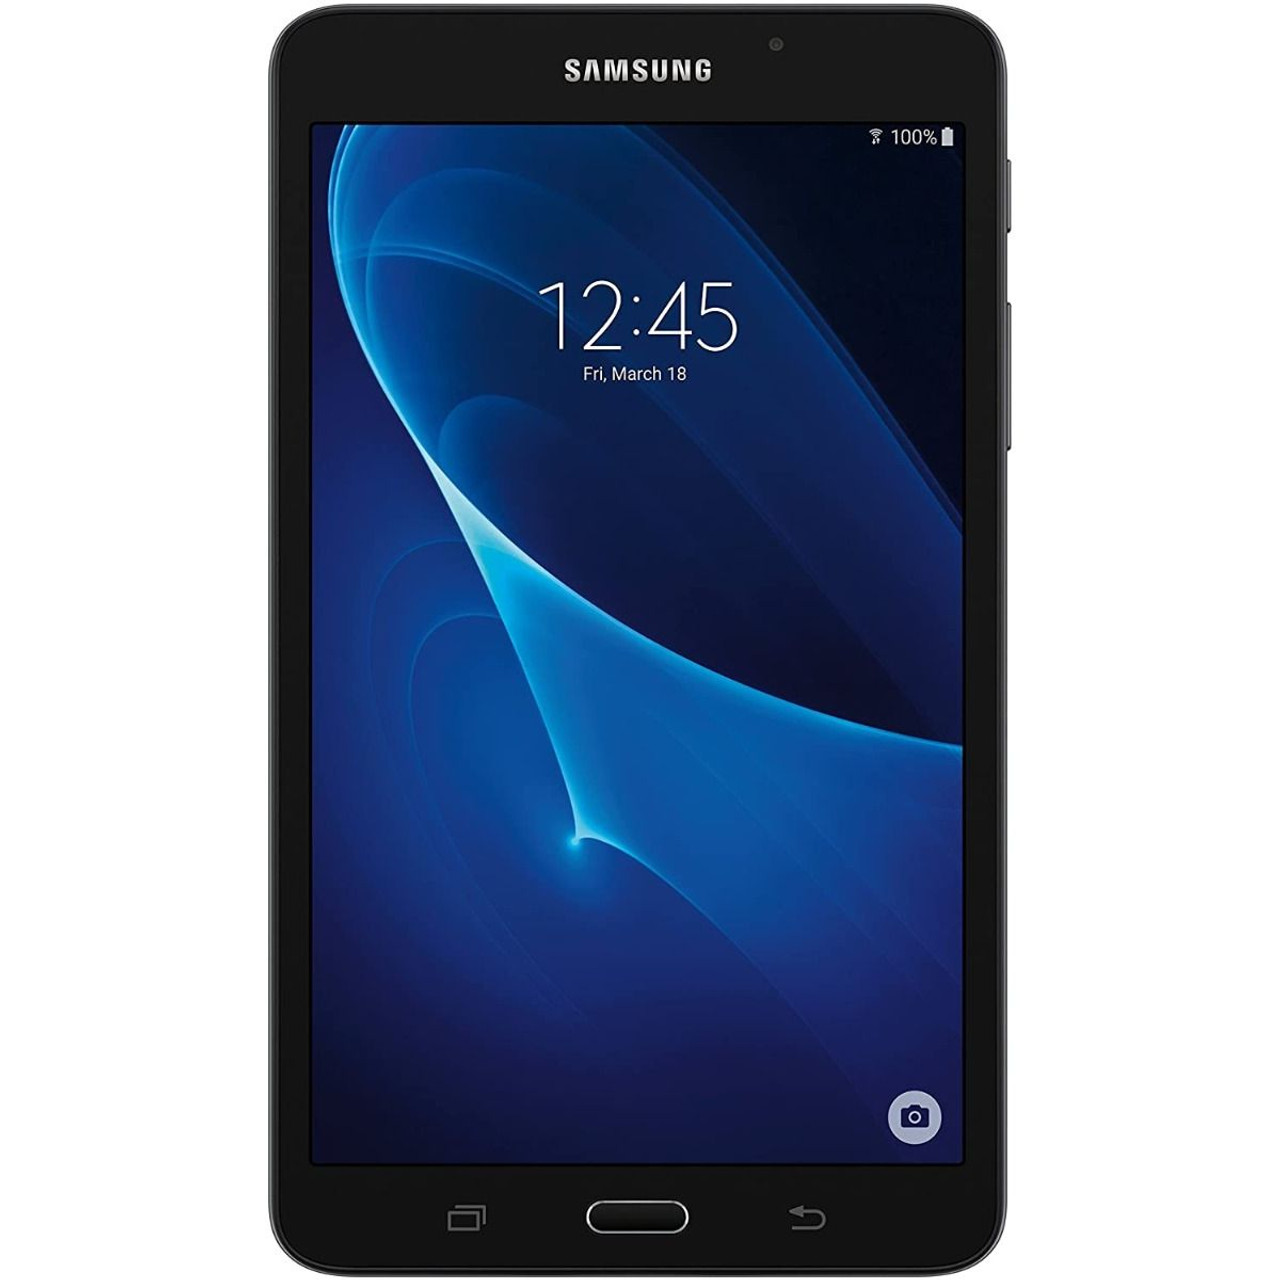 Samsung® Galaxy Tab A 7.0, 8GB, WiFi product image